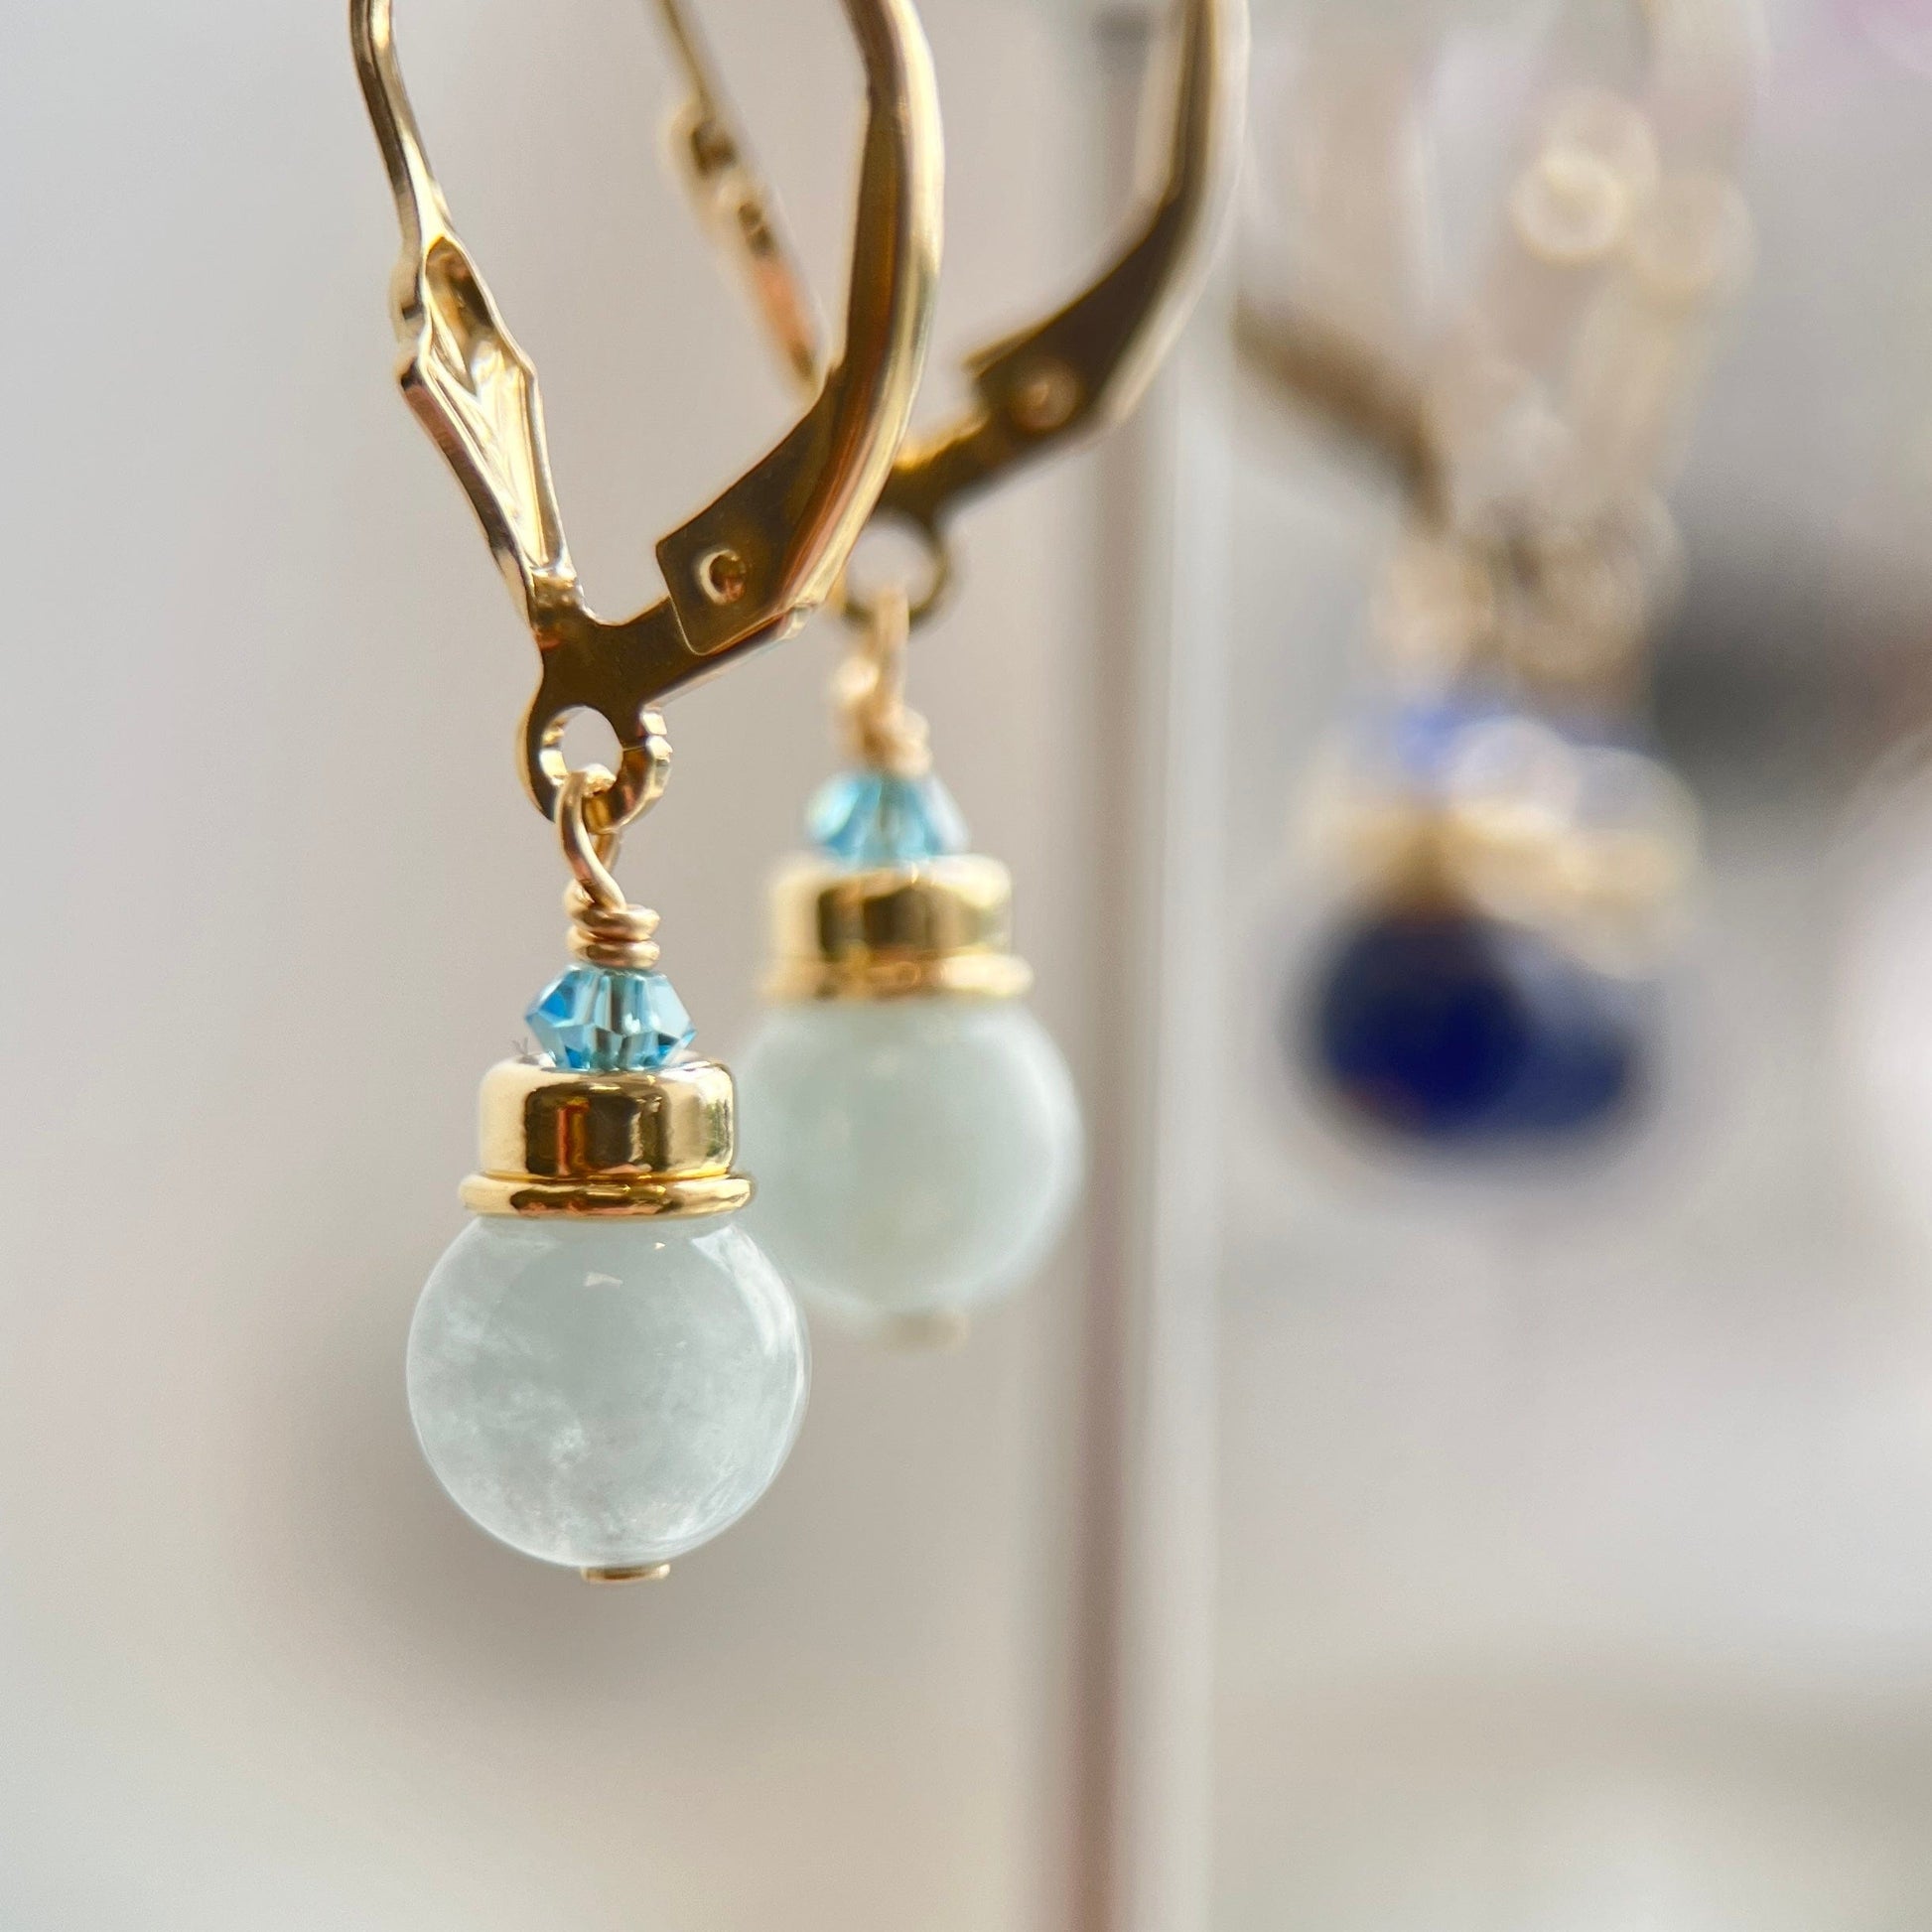 Brisuren Ohrringe Aquamarin | Edelsteine & 14K Solidvergoldung Schmuck Necklessary oesterreich handgemachte geschenke in wien